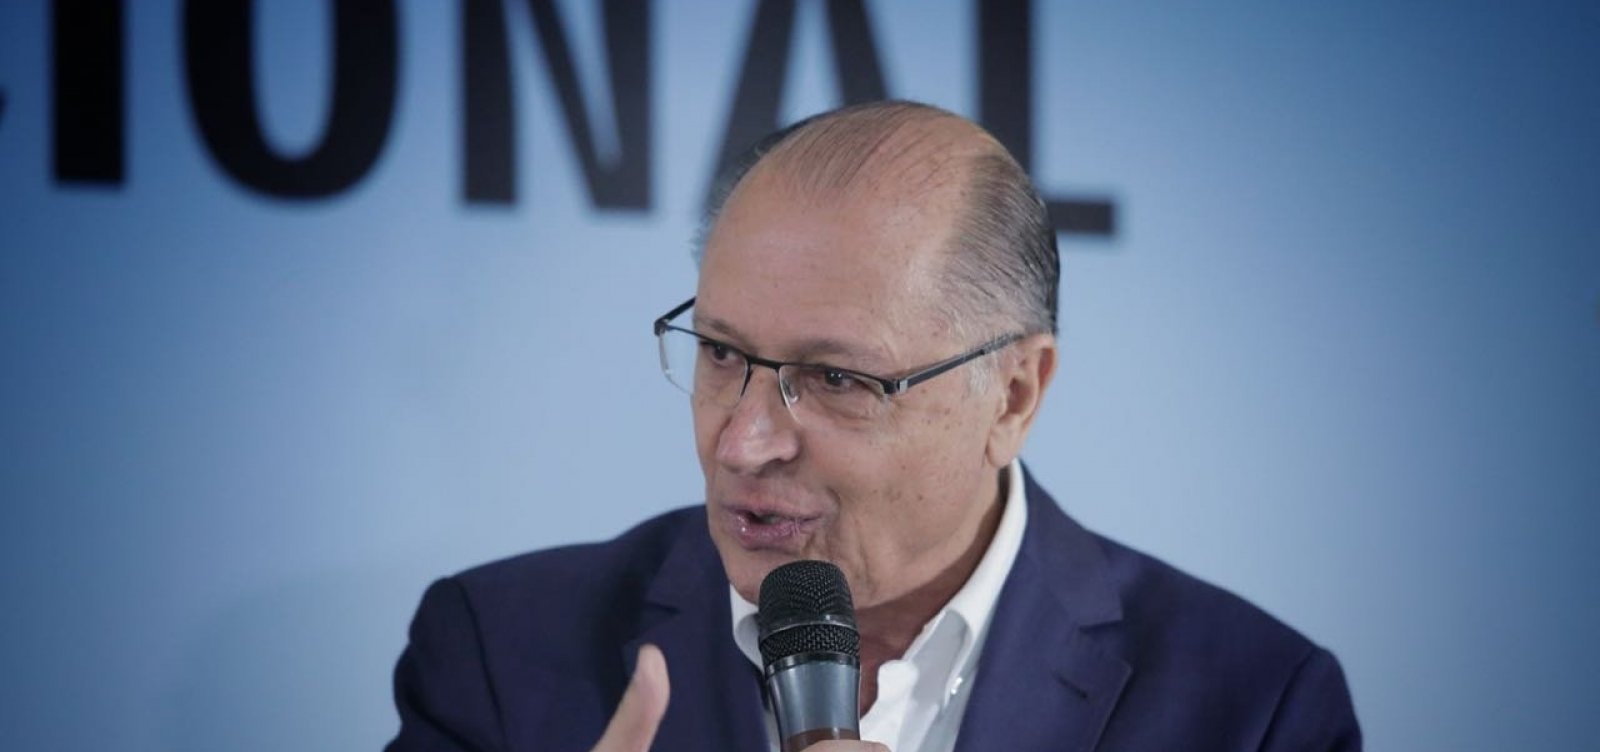 Alckmin muda de posição e defende voto útil